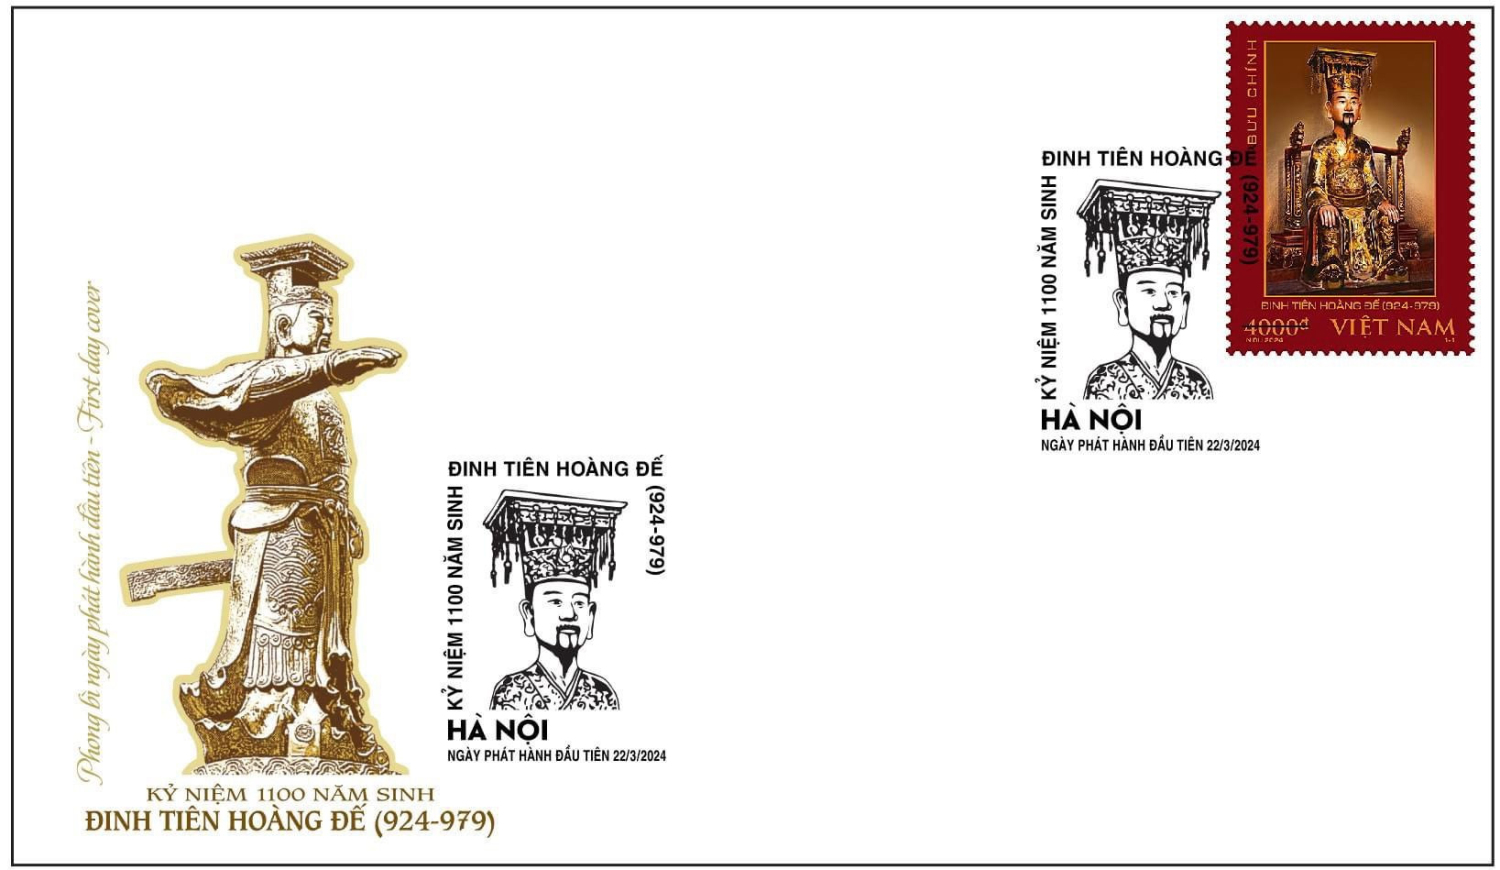 Giới thiệu bộ tem kỷ niệm 1100 năm sinh Đinh Tiên Hoàng đế